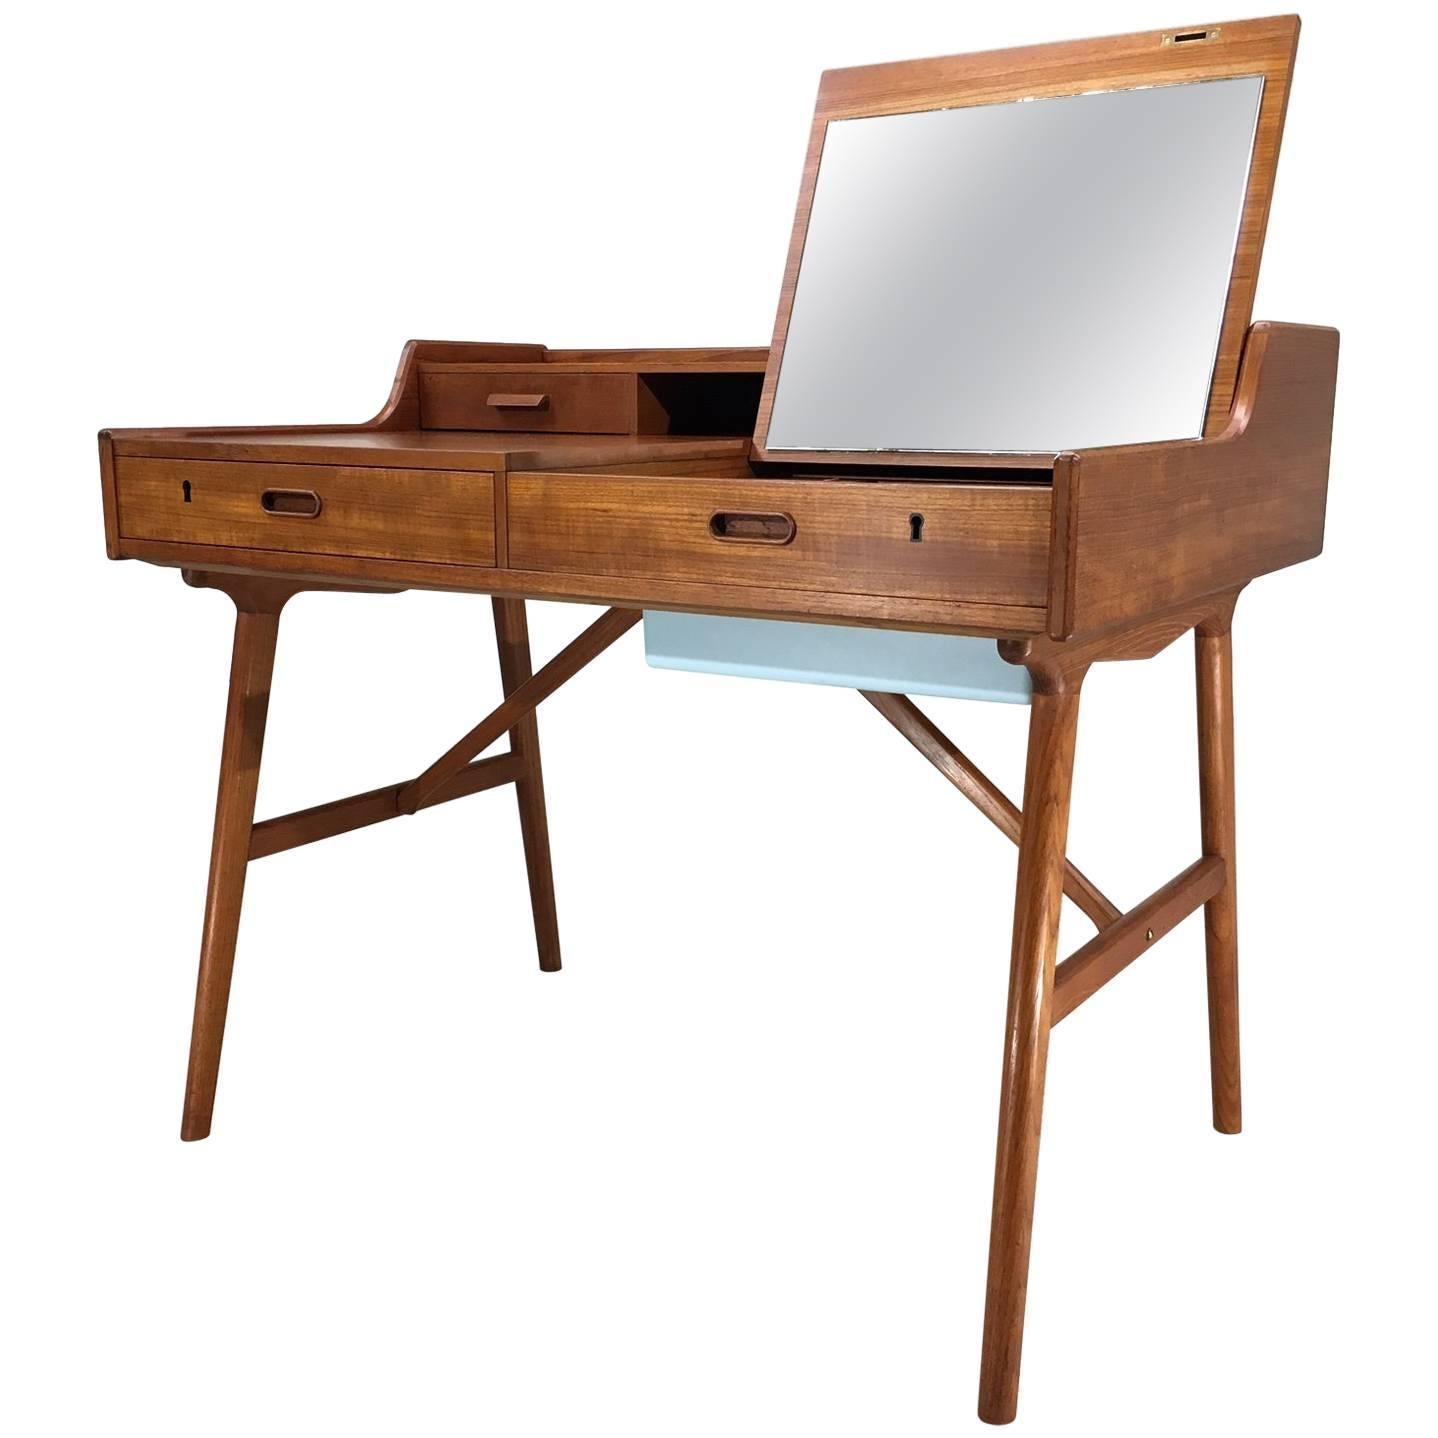 Arne Wahl Iversen for Vinde Mobler Model 65 Secretary Desk with Vanity Mirror